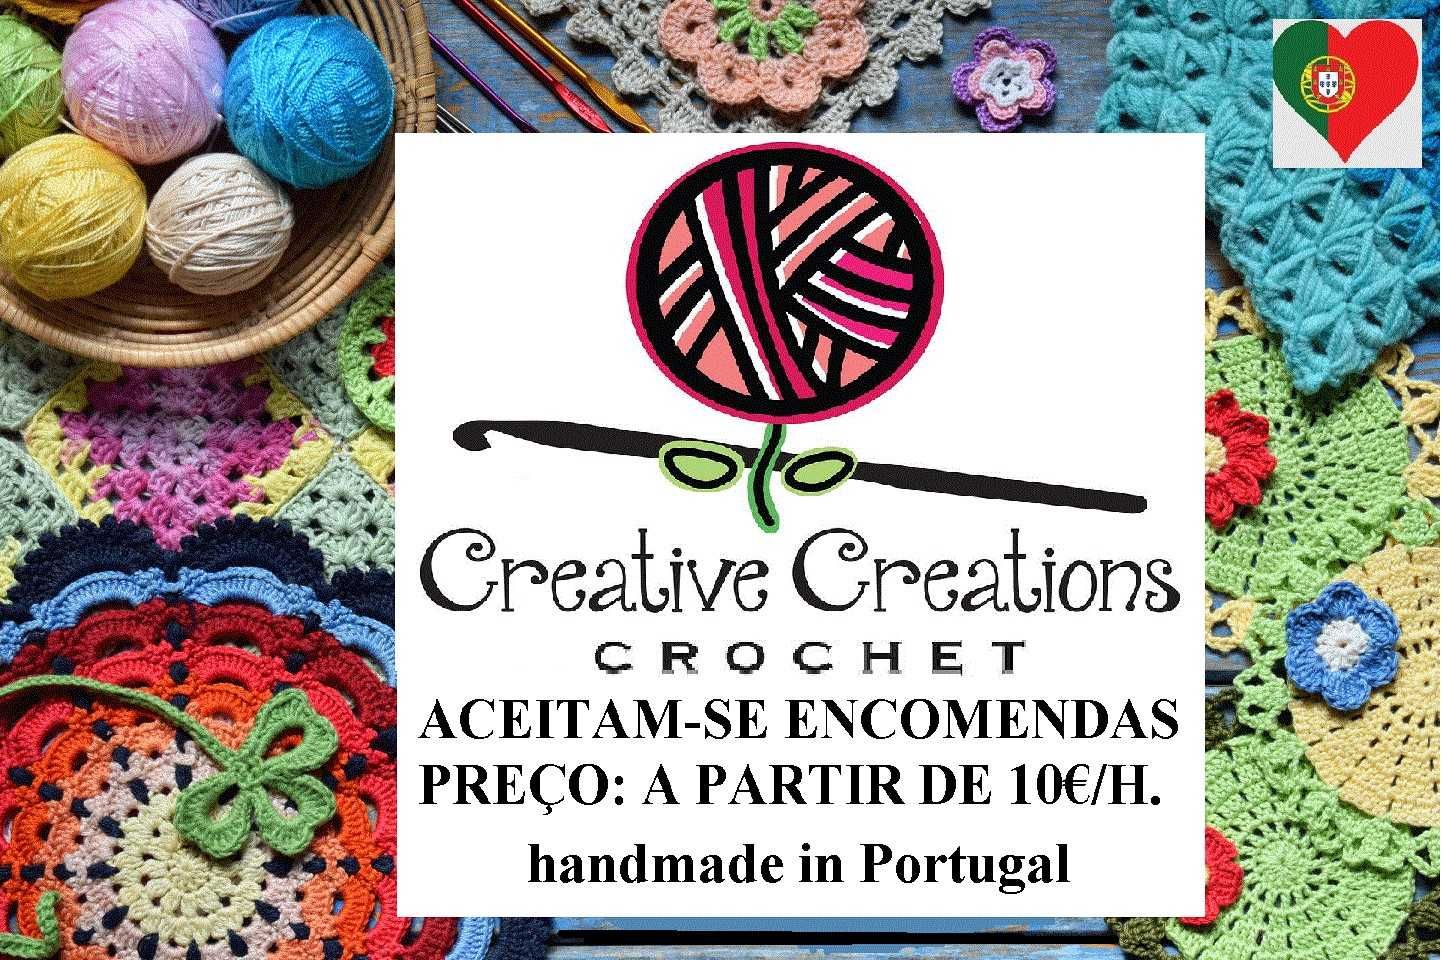 Crochet criativo, colchas e outros artigos